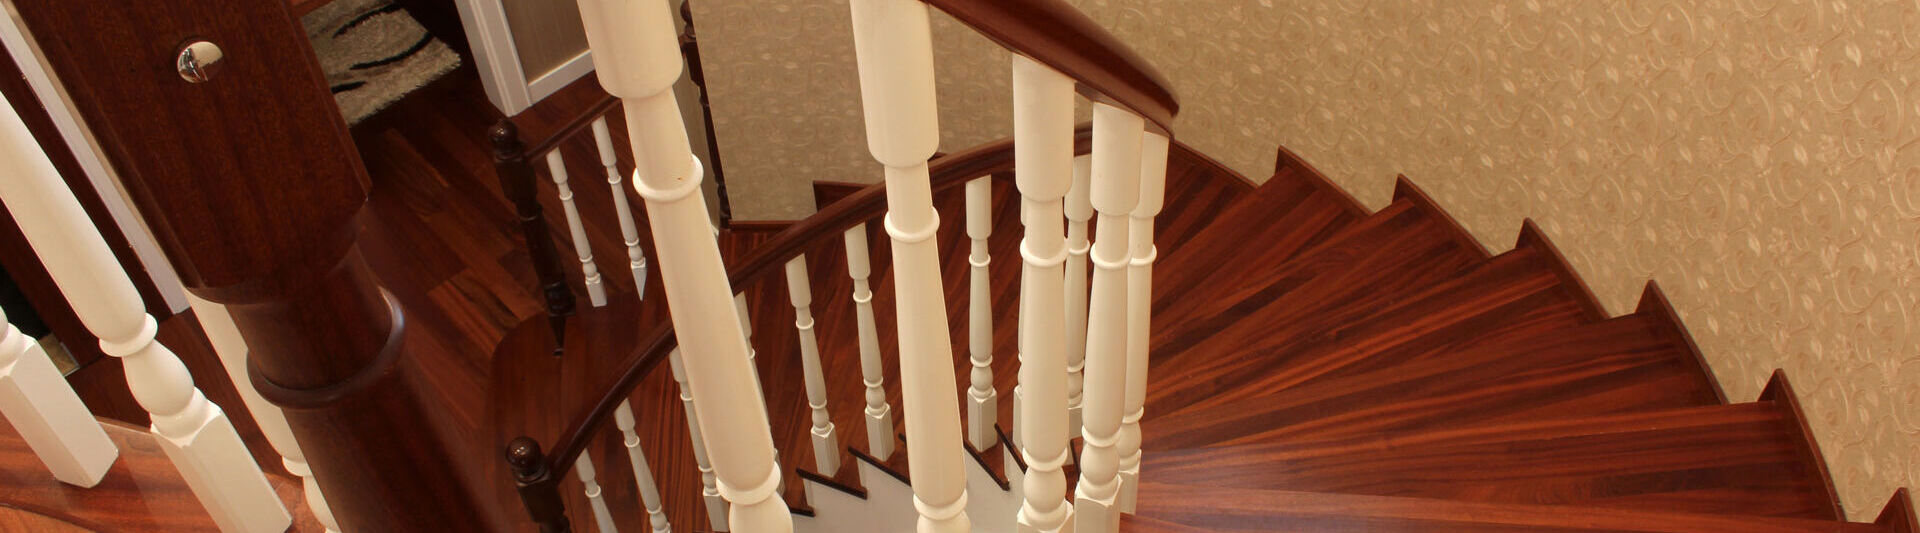 Treppenlift-Voraussetzungen: Ein Treppengeländer ist mit den passenden Schienen für einen Lift ausgestattet